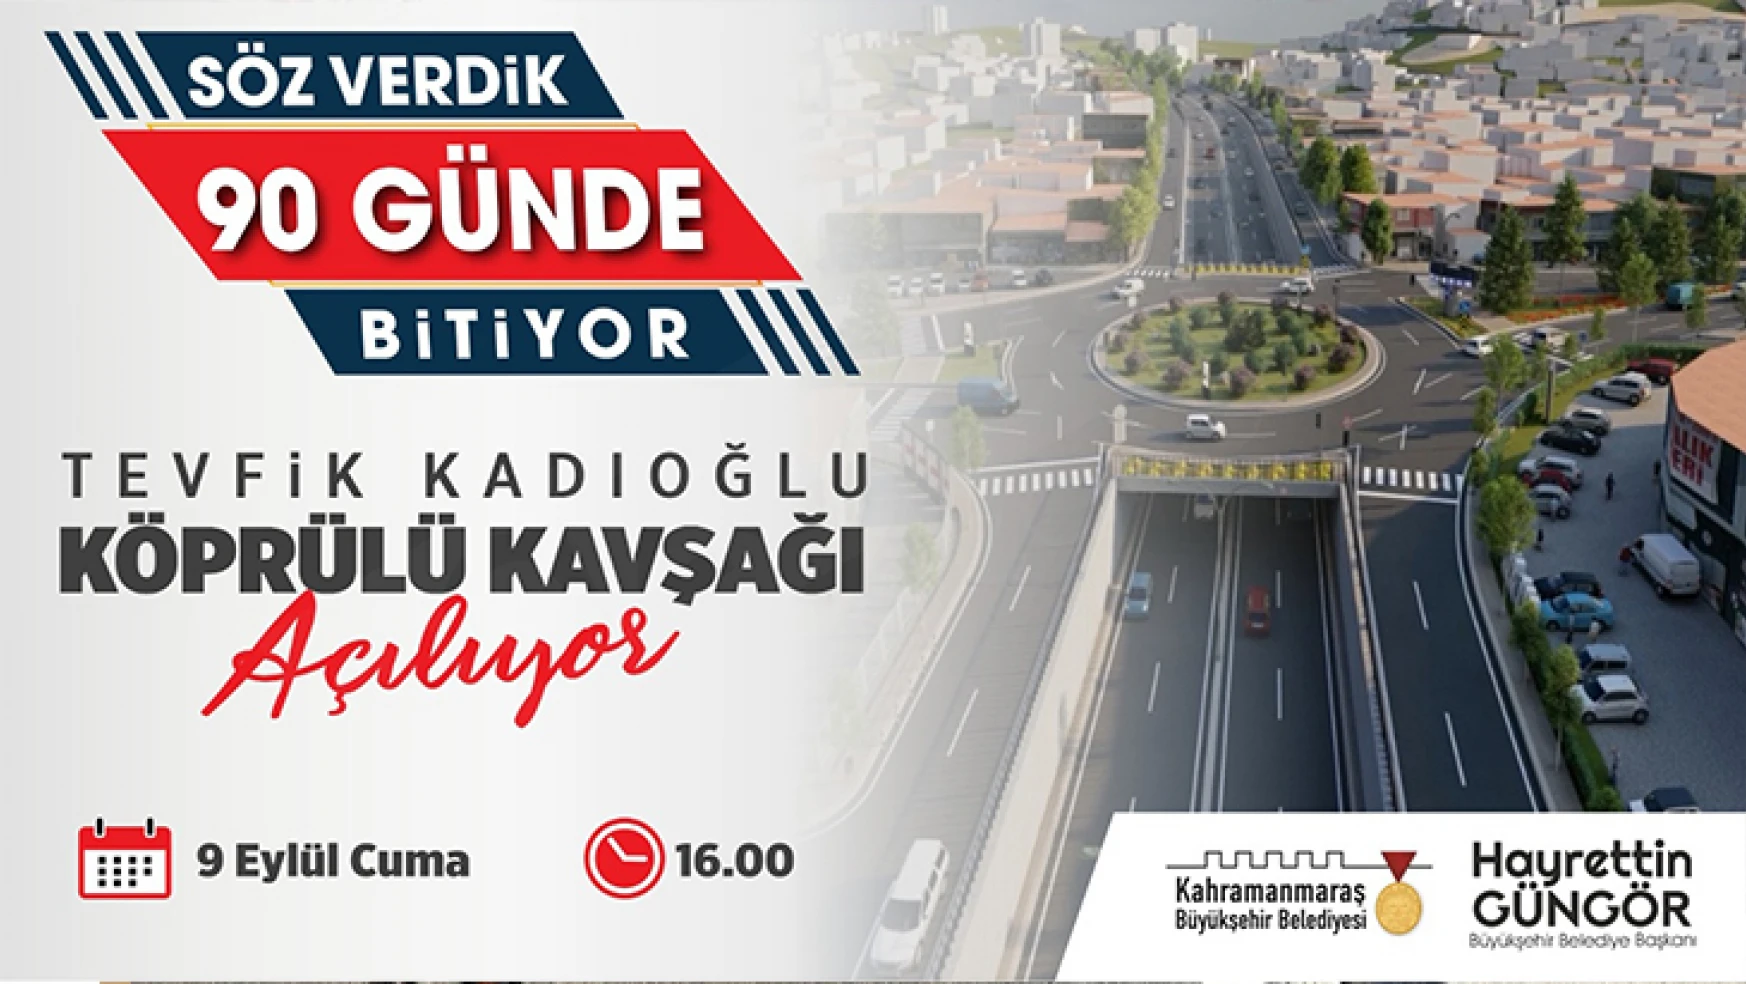 Tevfik Kadıoğlu Köprülü Kavşağı trafiğe açılıyor